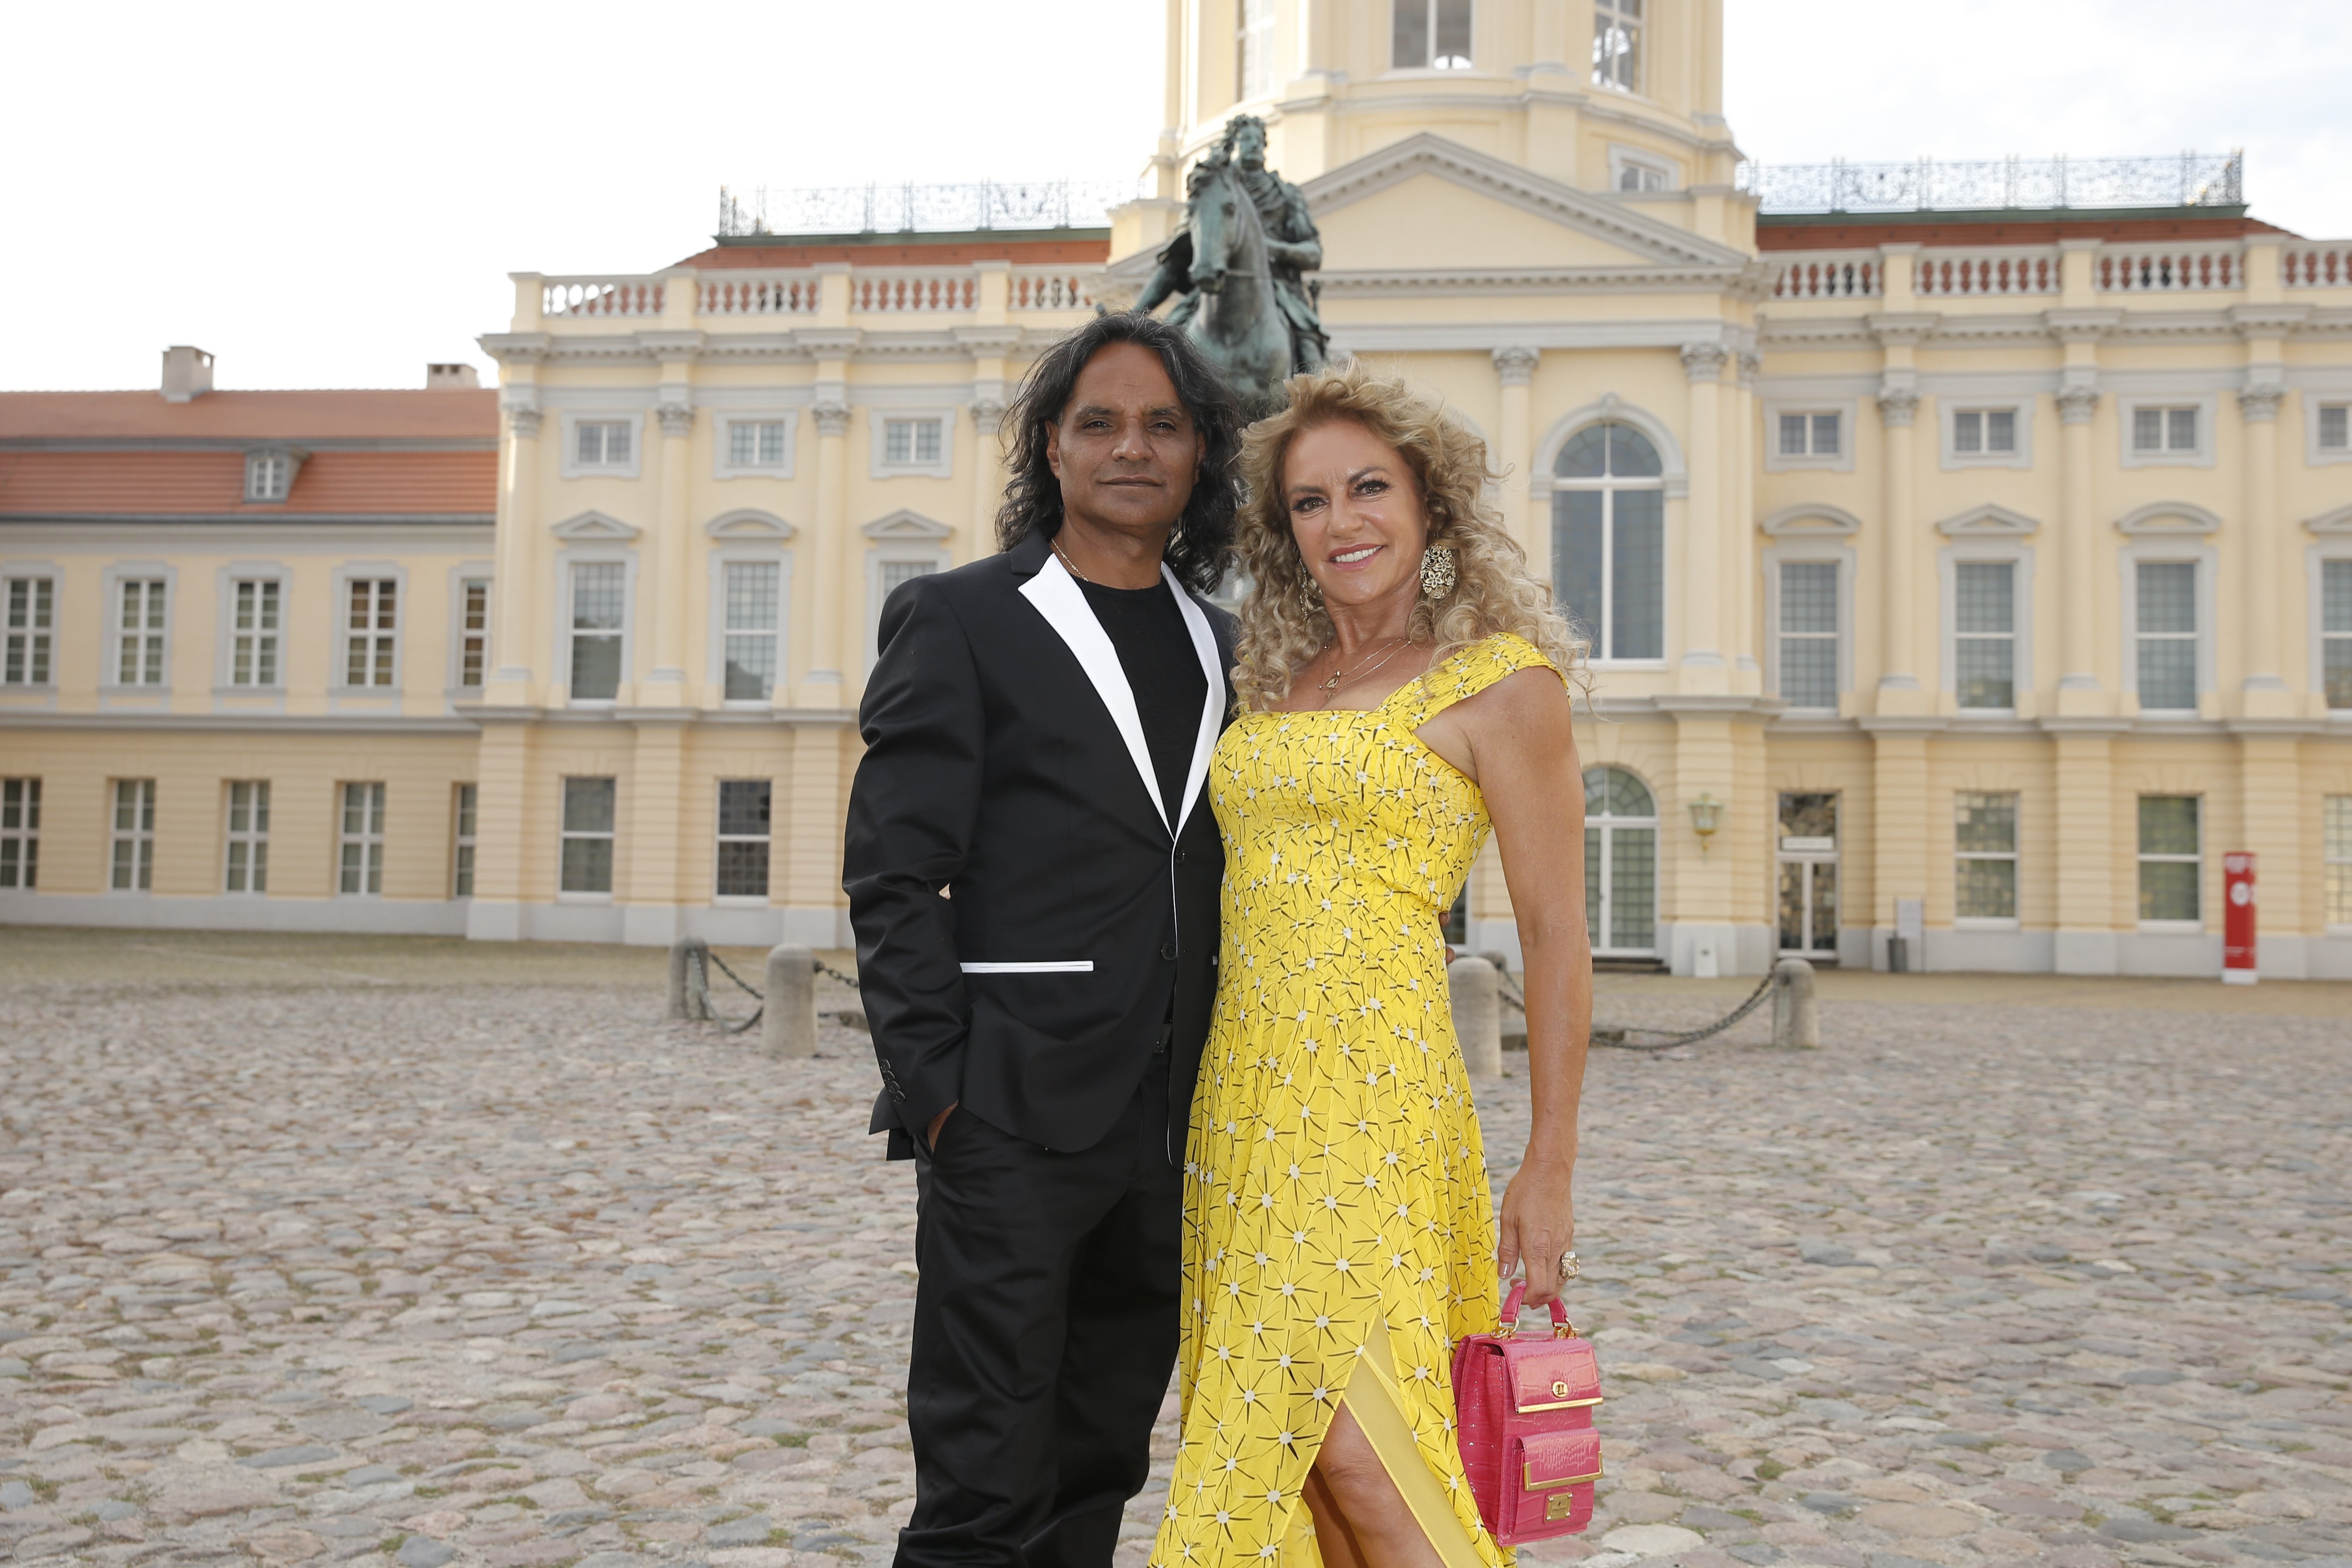 Christine Neubauer und Jose Campos beim Presseball Berlin-Sommergala 2019 in der Großen Orangerie im Schloss Charlottenburg. | Quelle: Getty Images